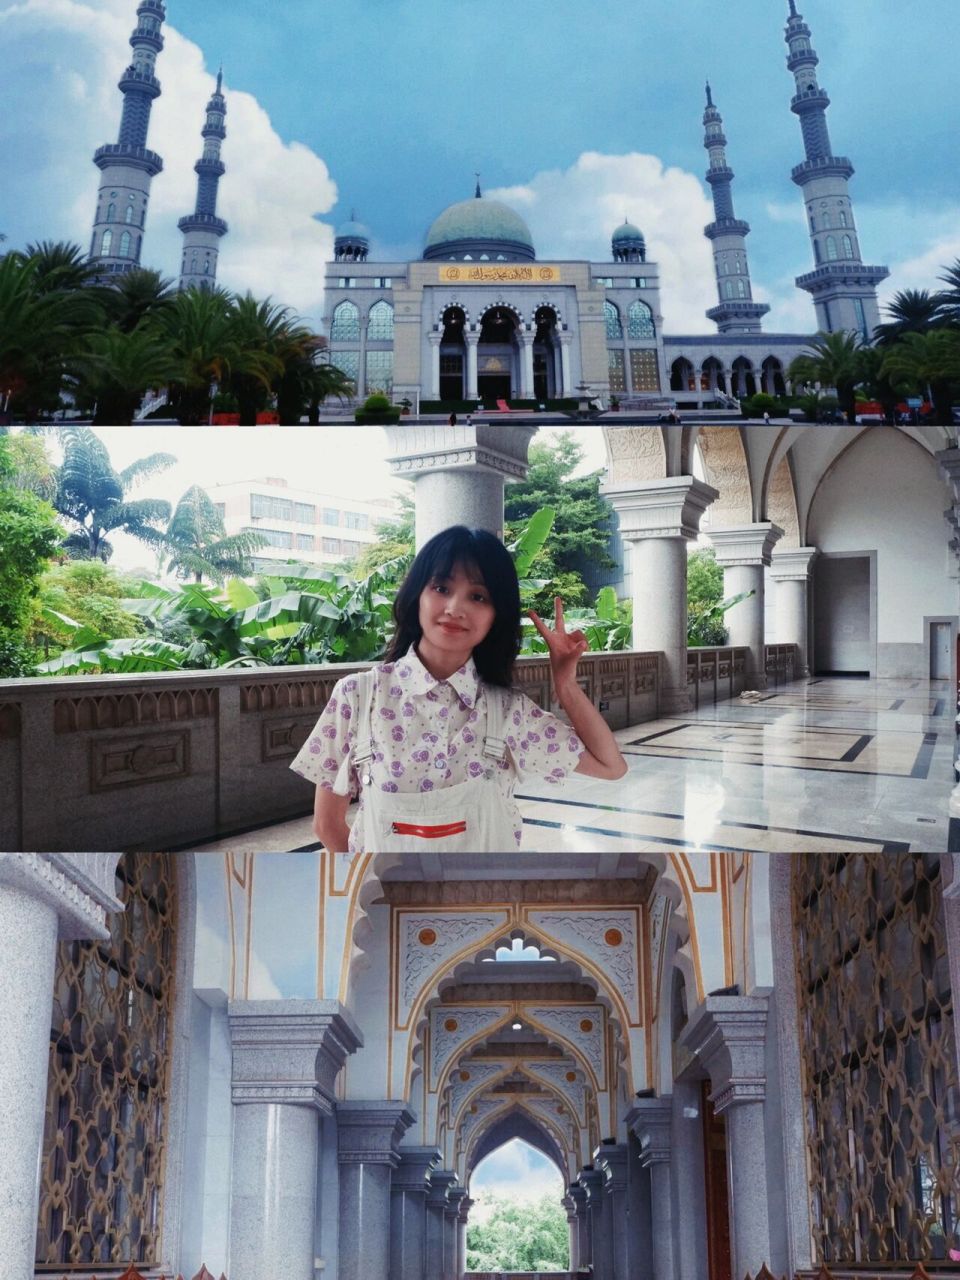 假装在国外,这里是云南小迪拜 沙甸大清真寺是西南地区规模最大的